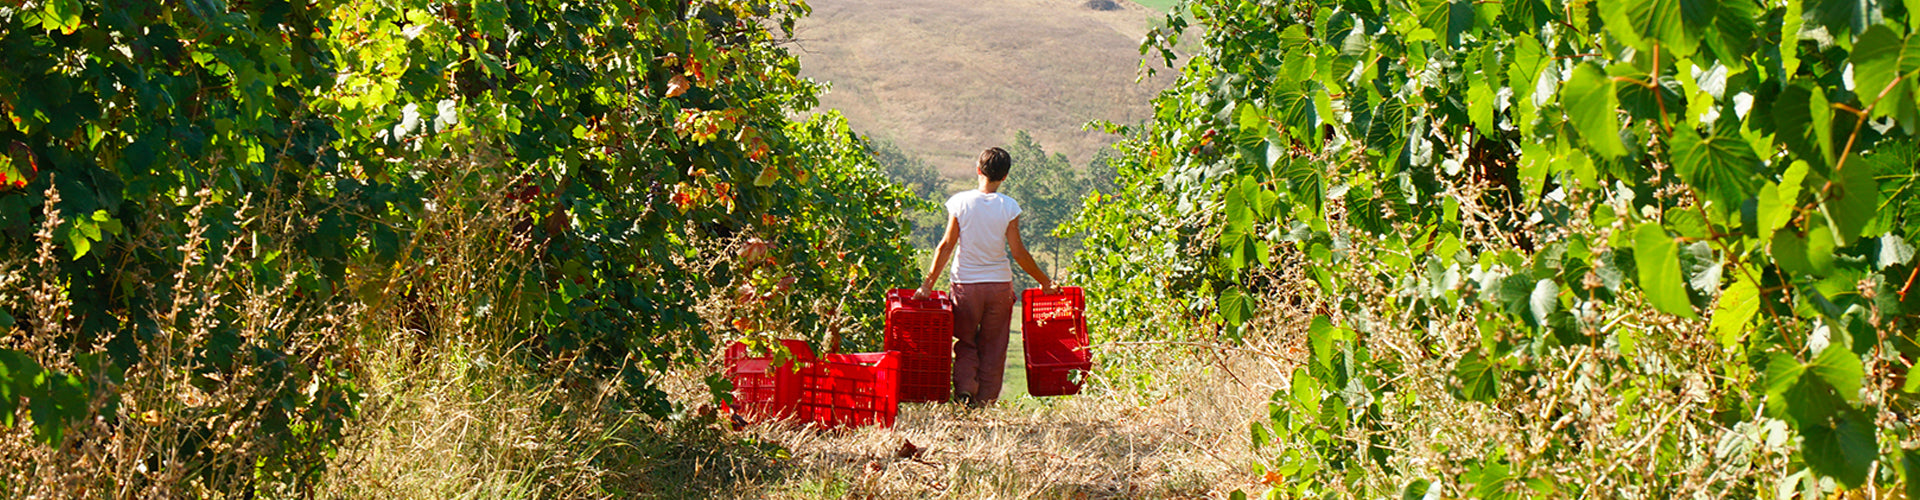 Chiara Penati harvesting grapes in the Oltretorrente Vineyards